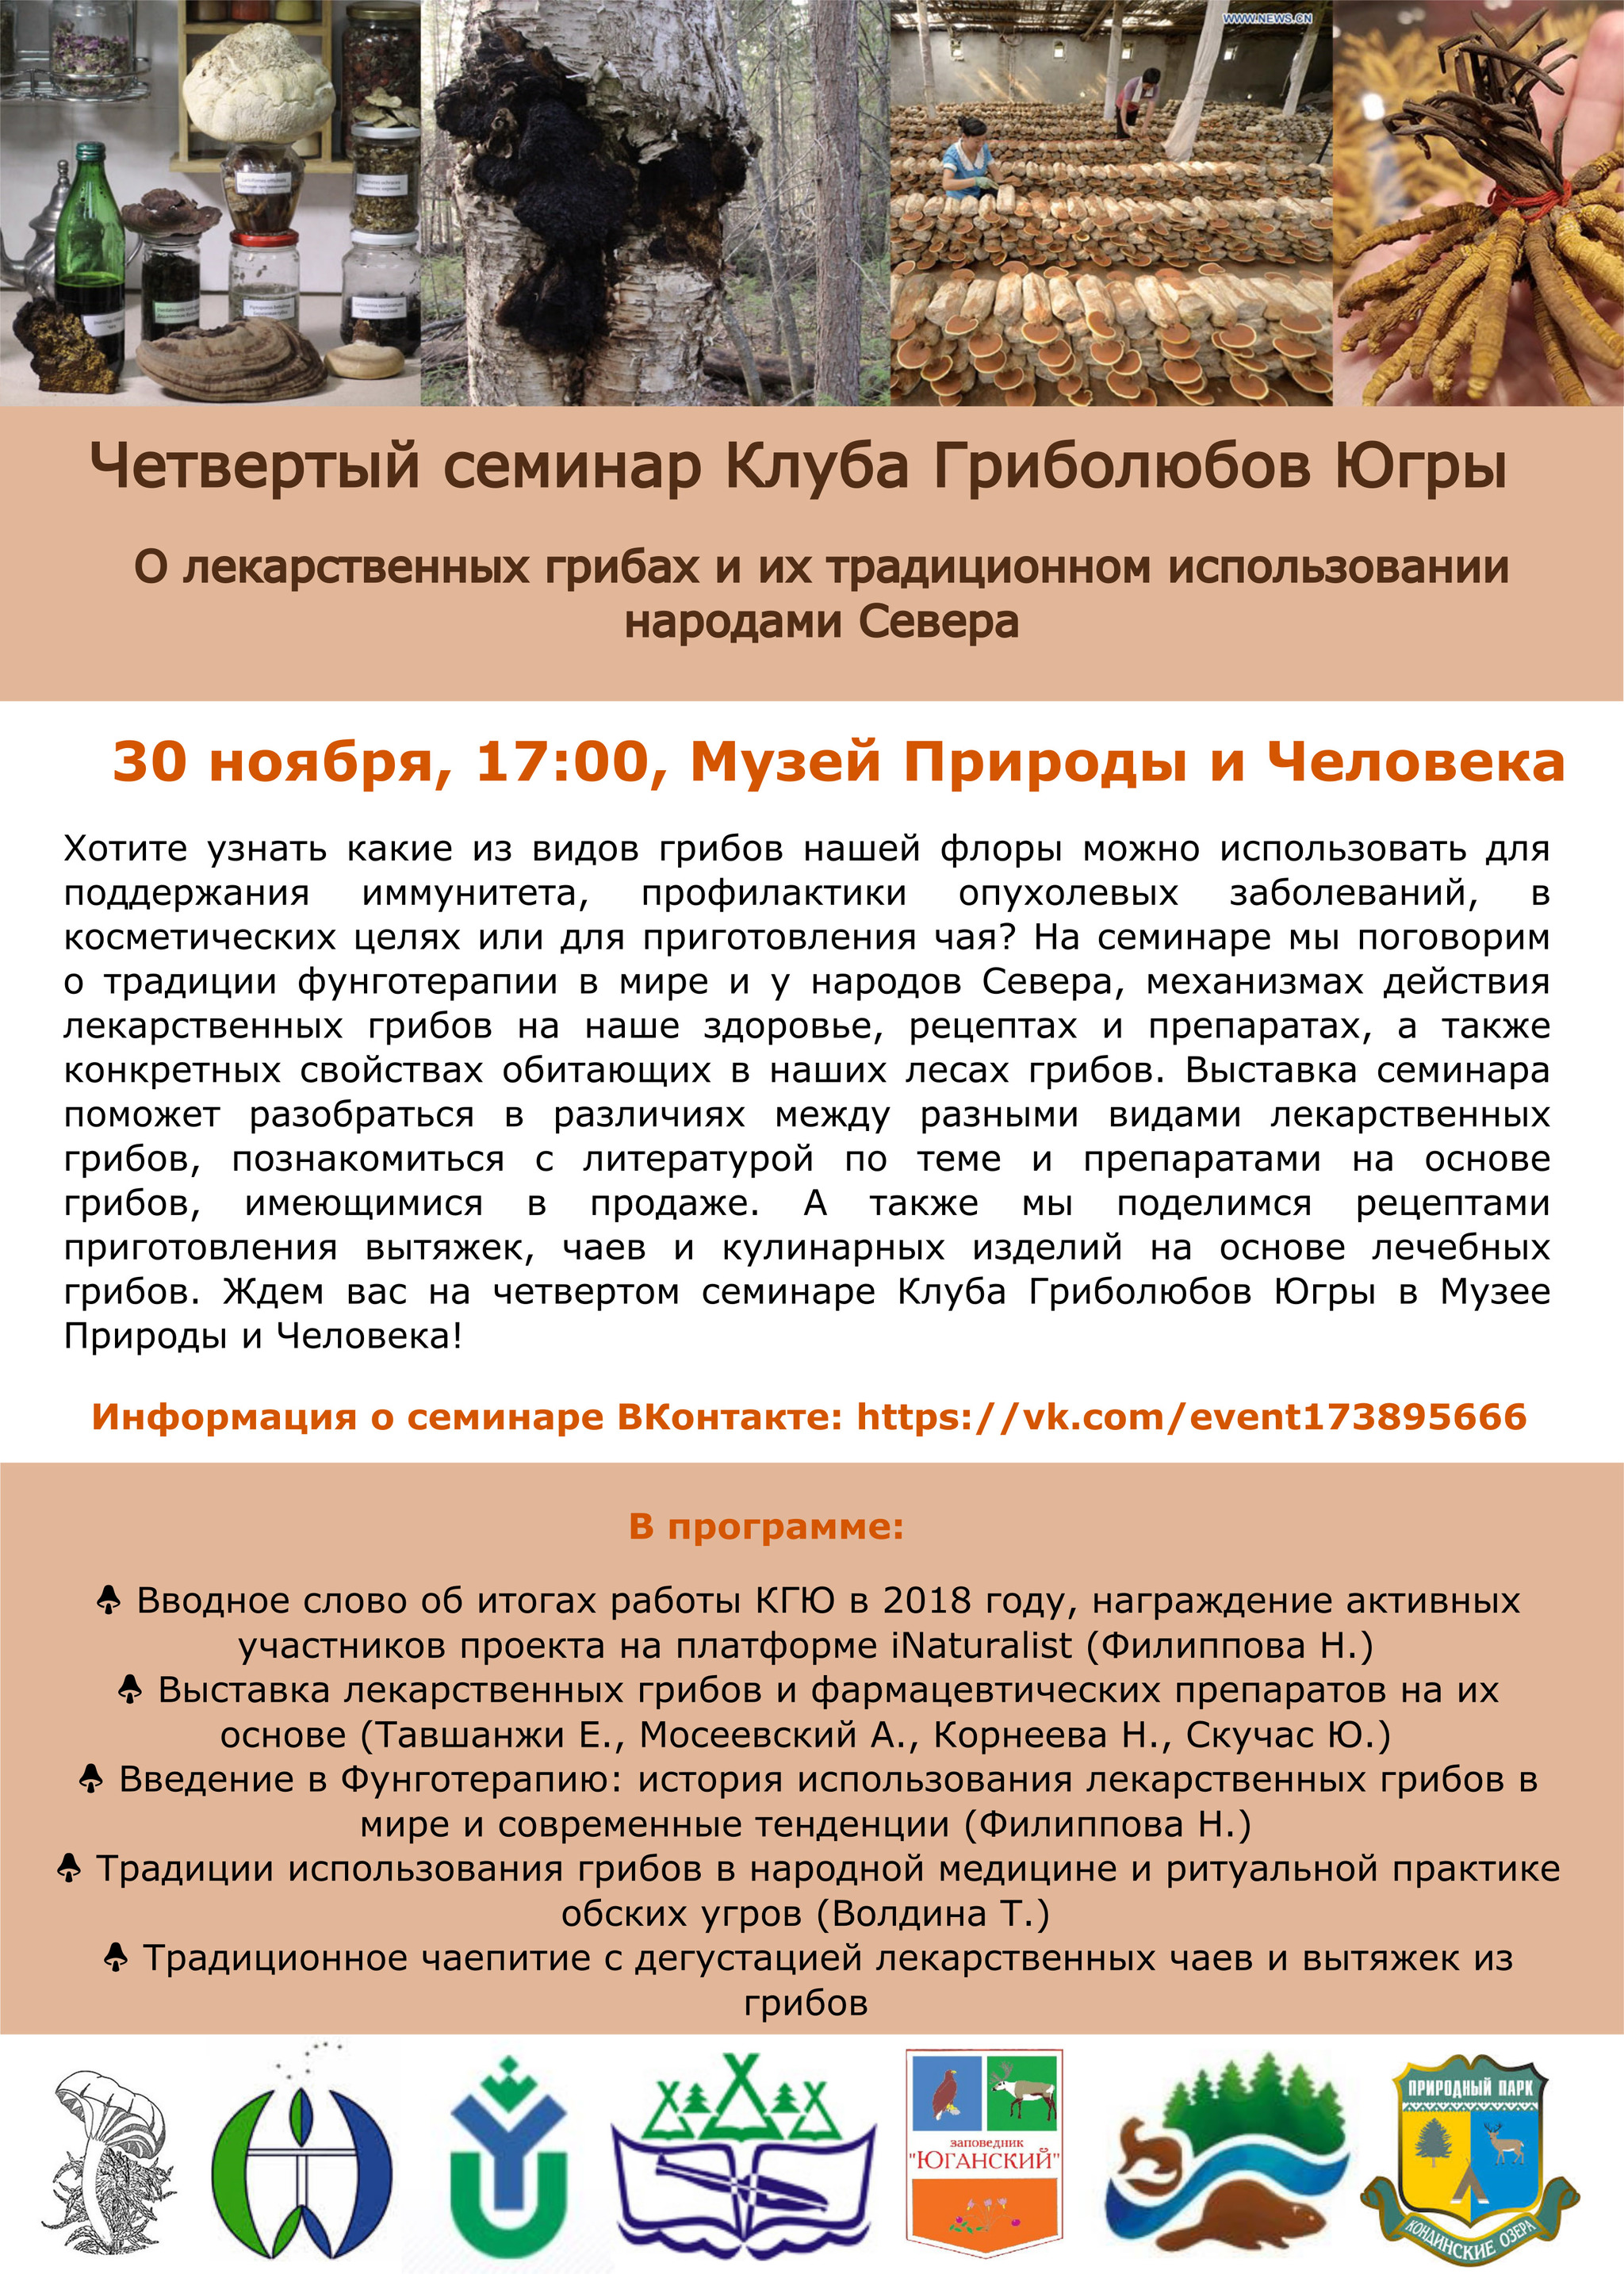 Четвертый семинар Клуба гриболюбов Югры пройдет в Ханты-Мансийске